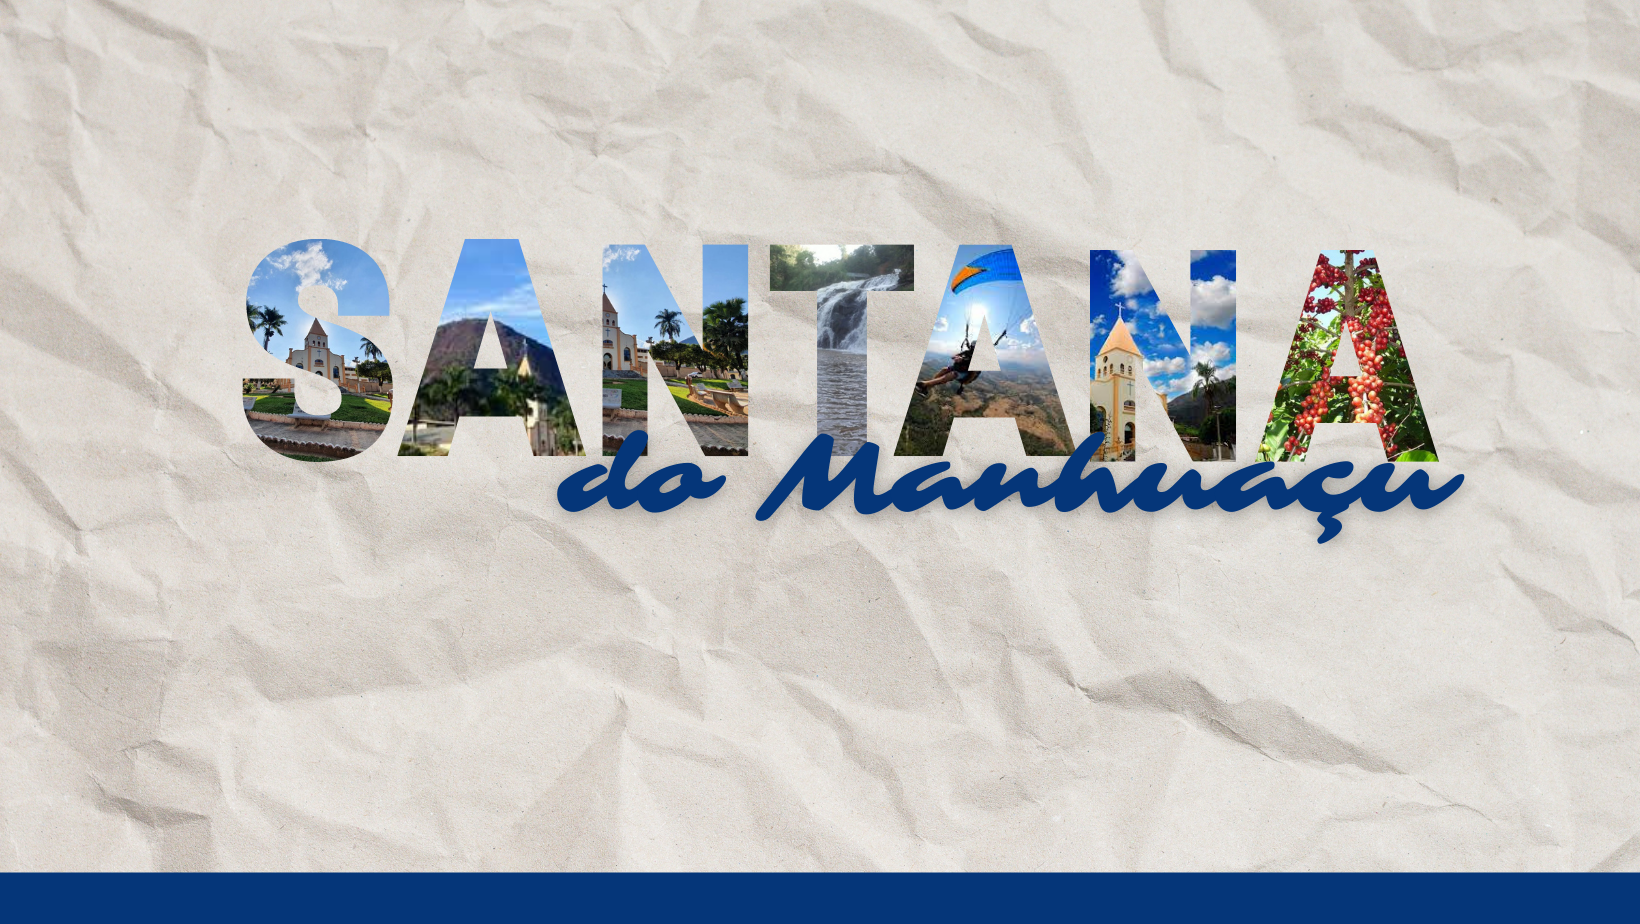 Portal de Transparência .:. Prefeitura Municipal de Santana do Ipanema